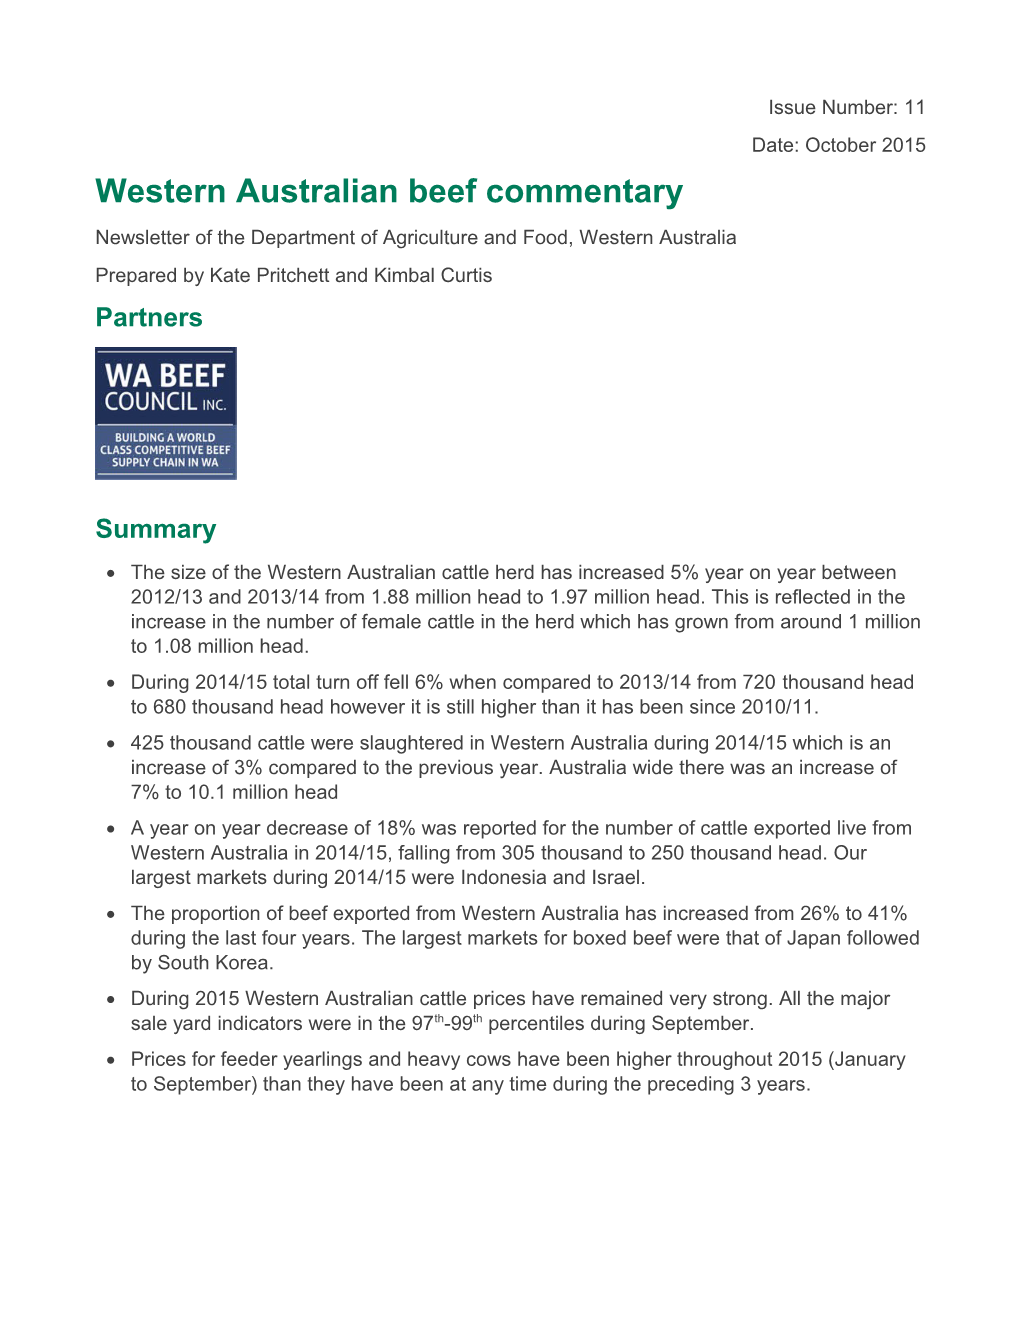 Western Australian Beef Commentary